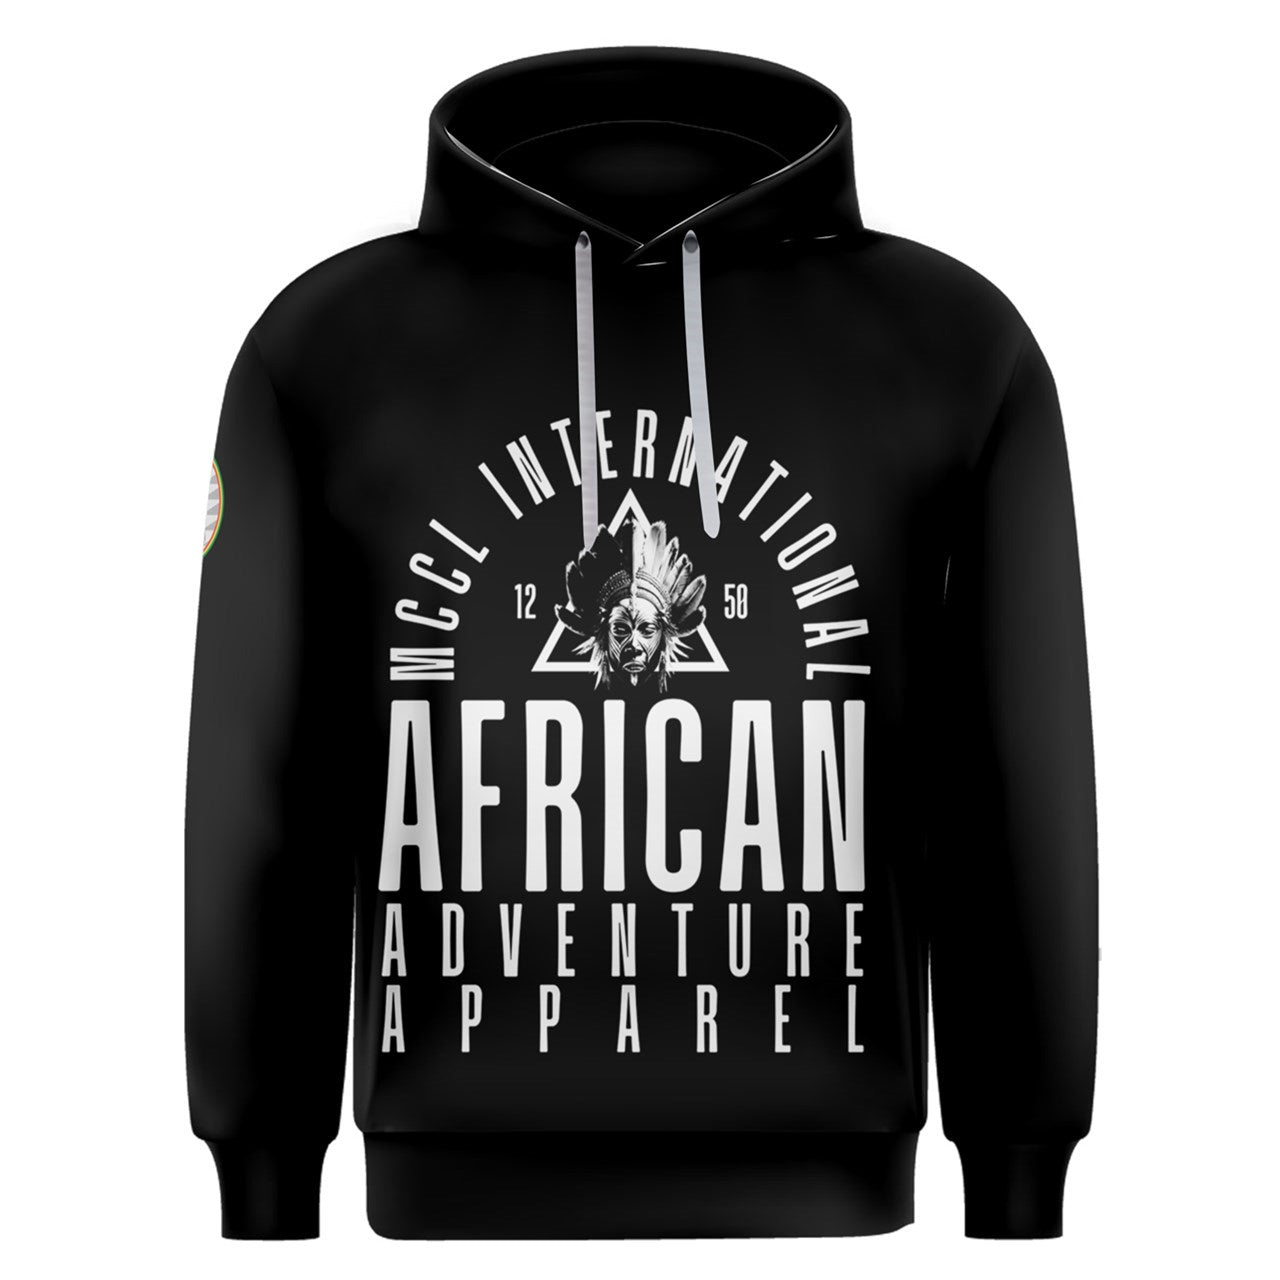 1250 AFRICAN ADVENTURE HOODIE - BLACK